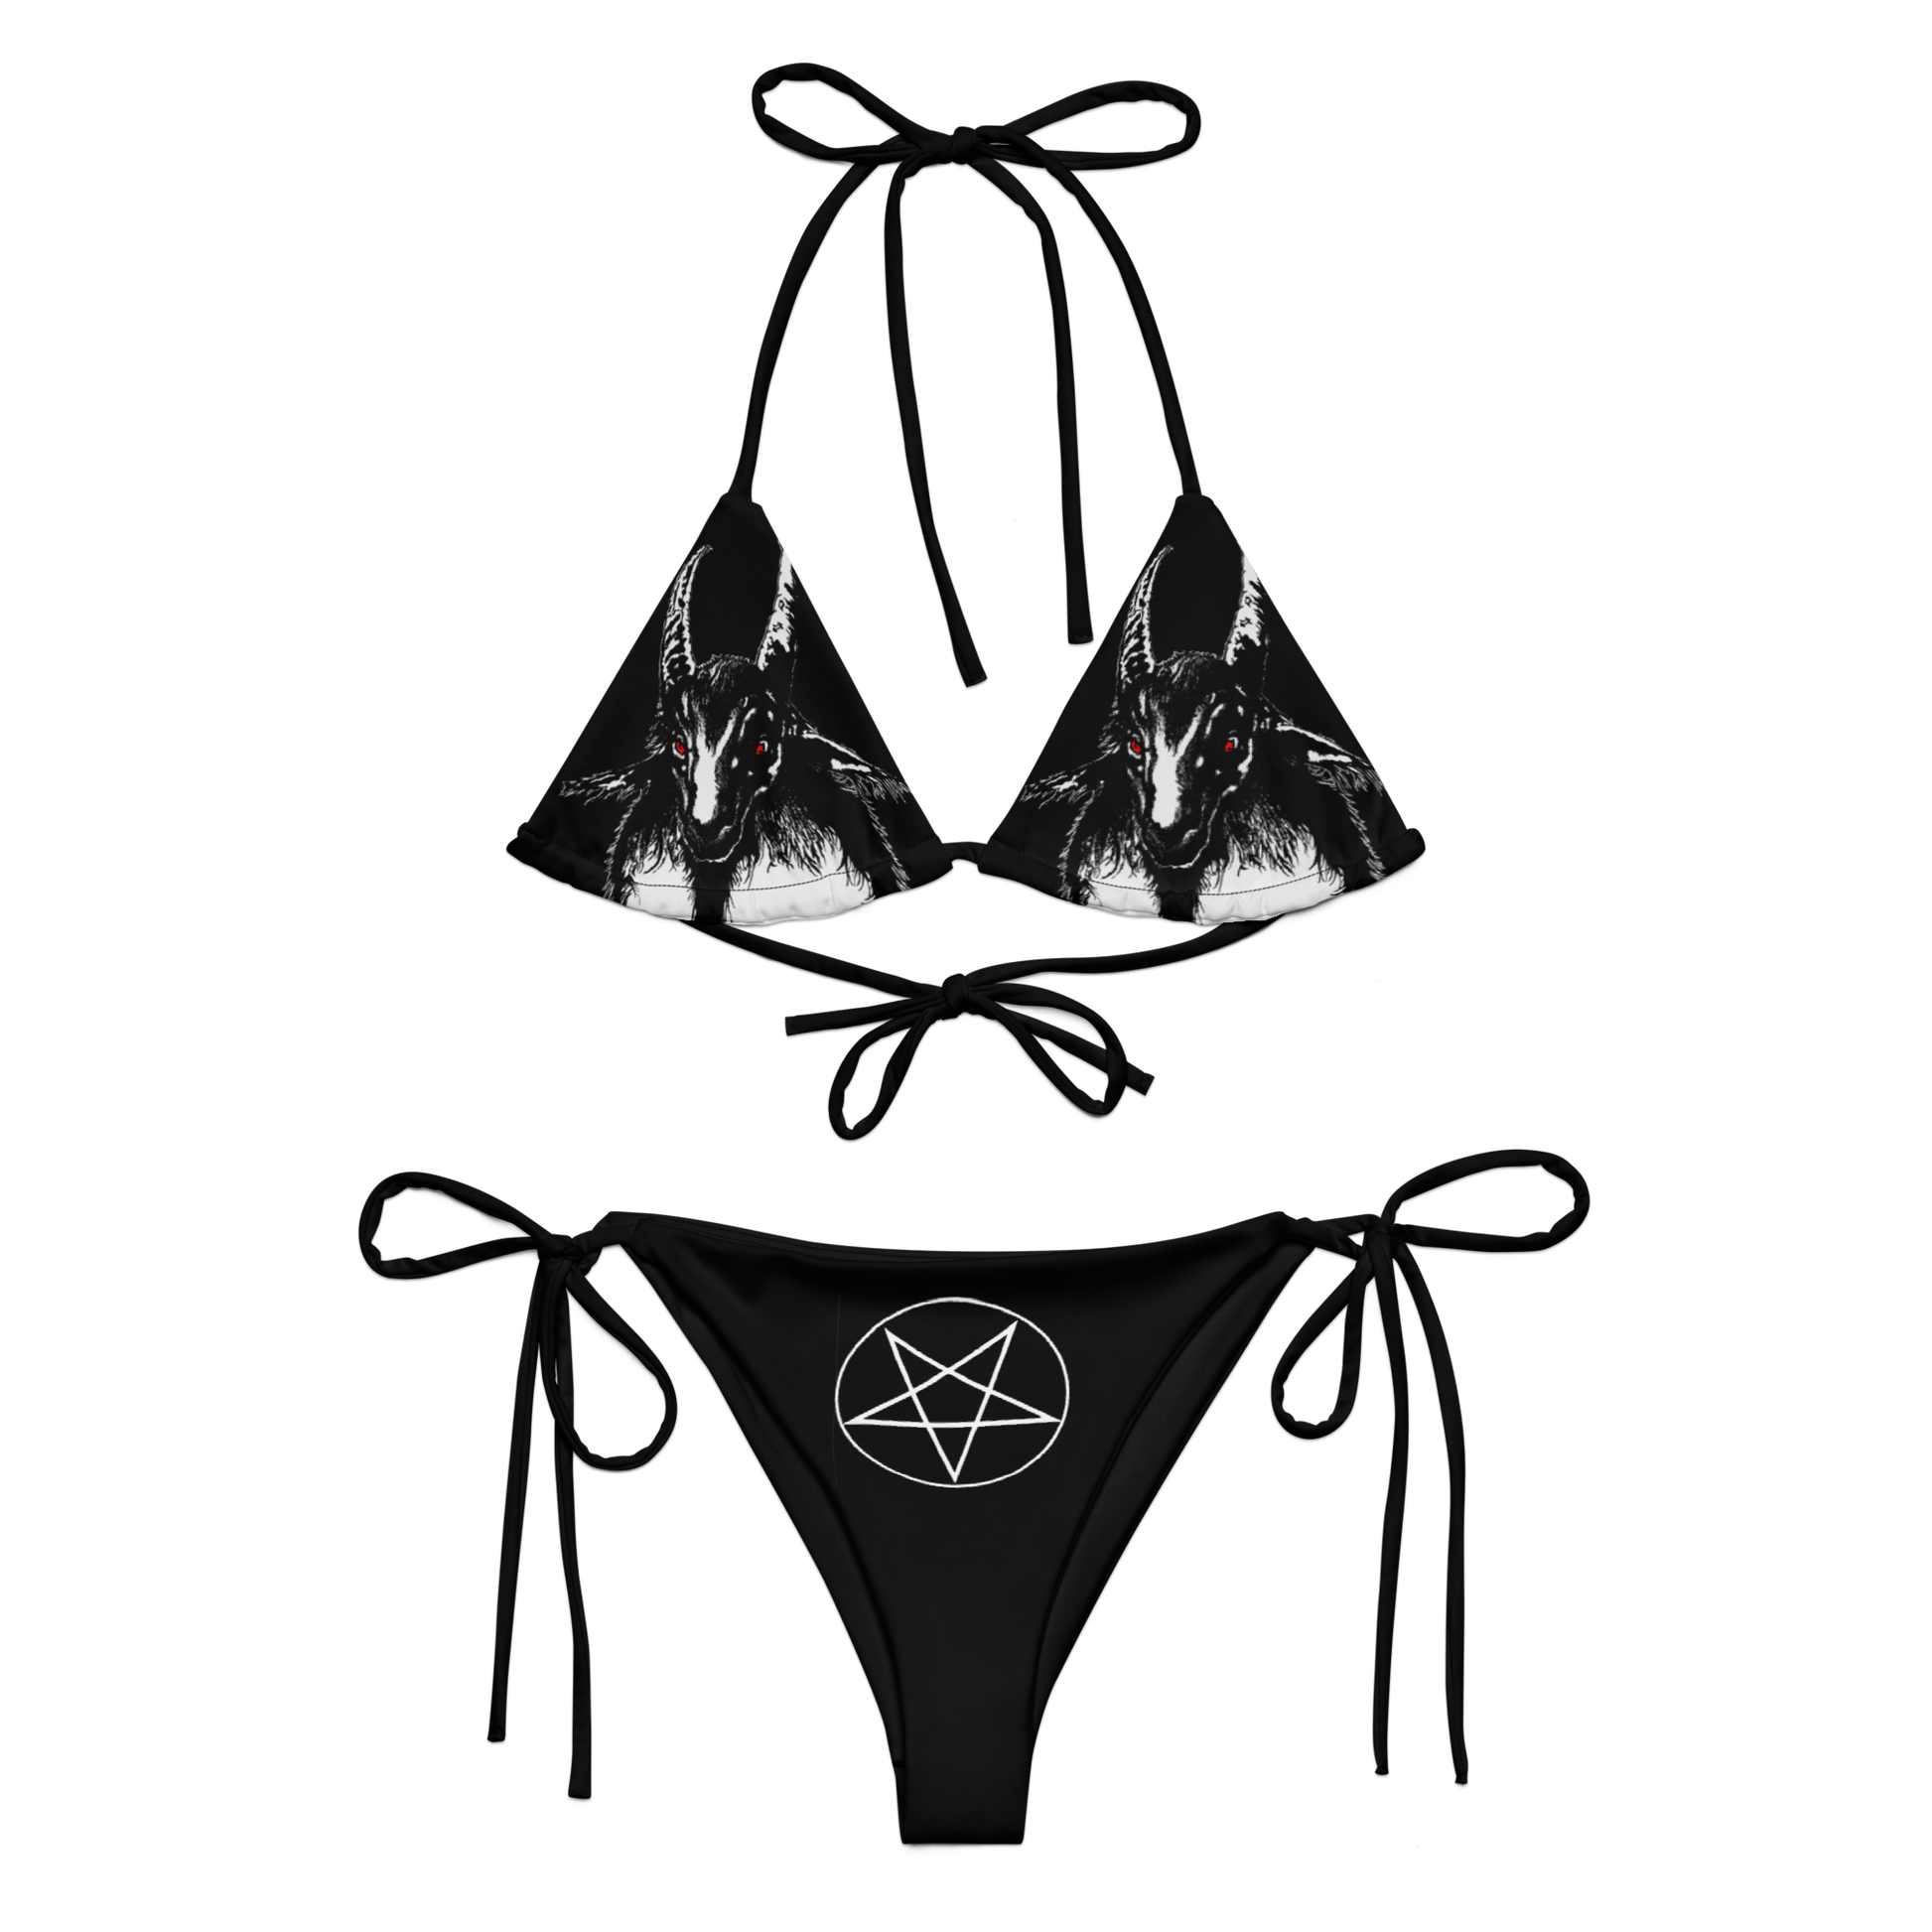 Bathory Bikini Swimsuit by Metal Mistress